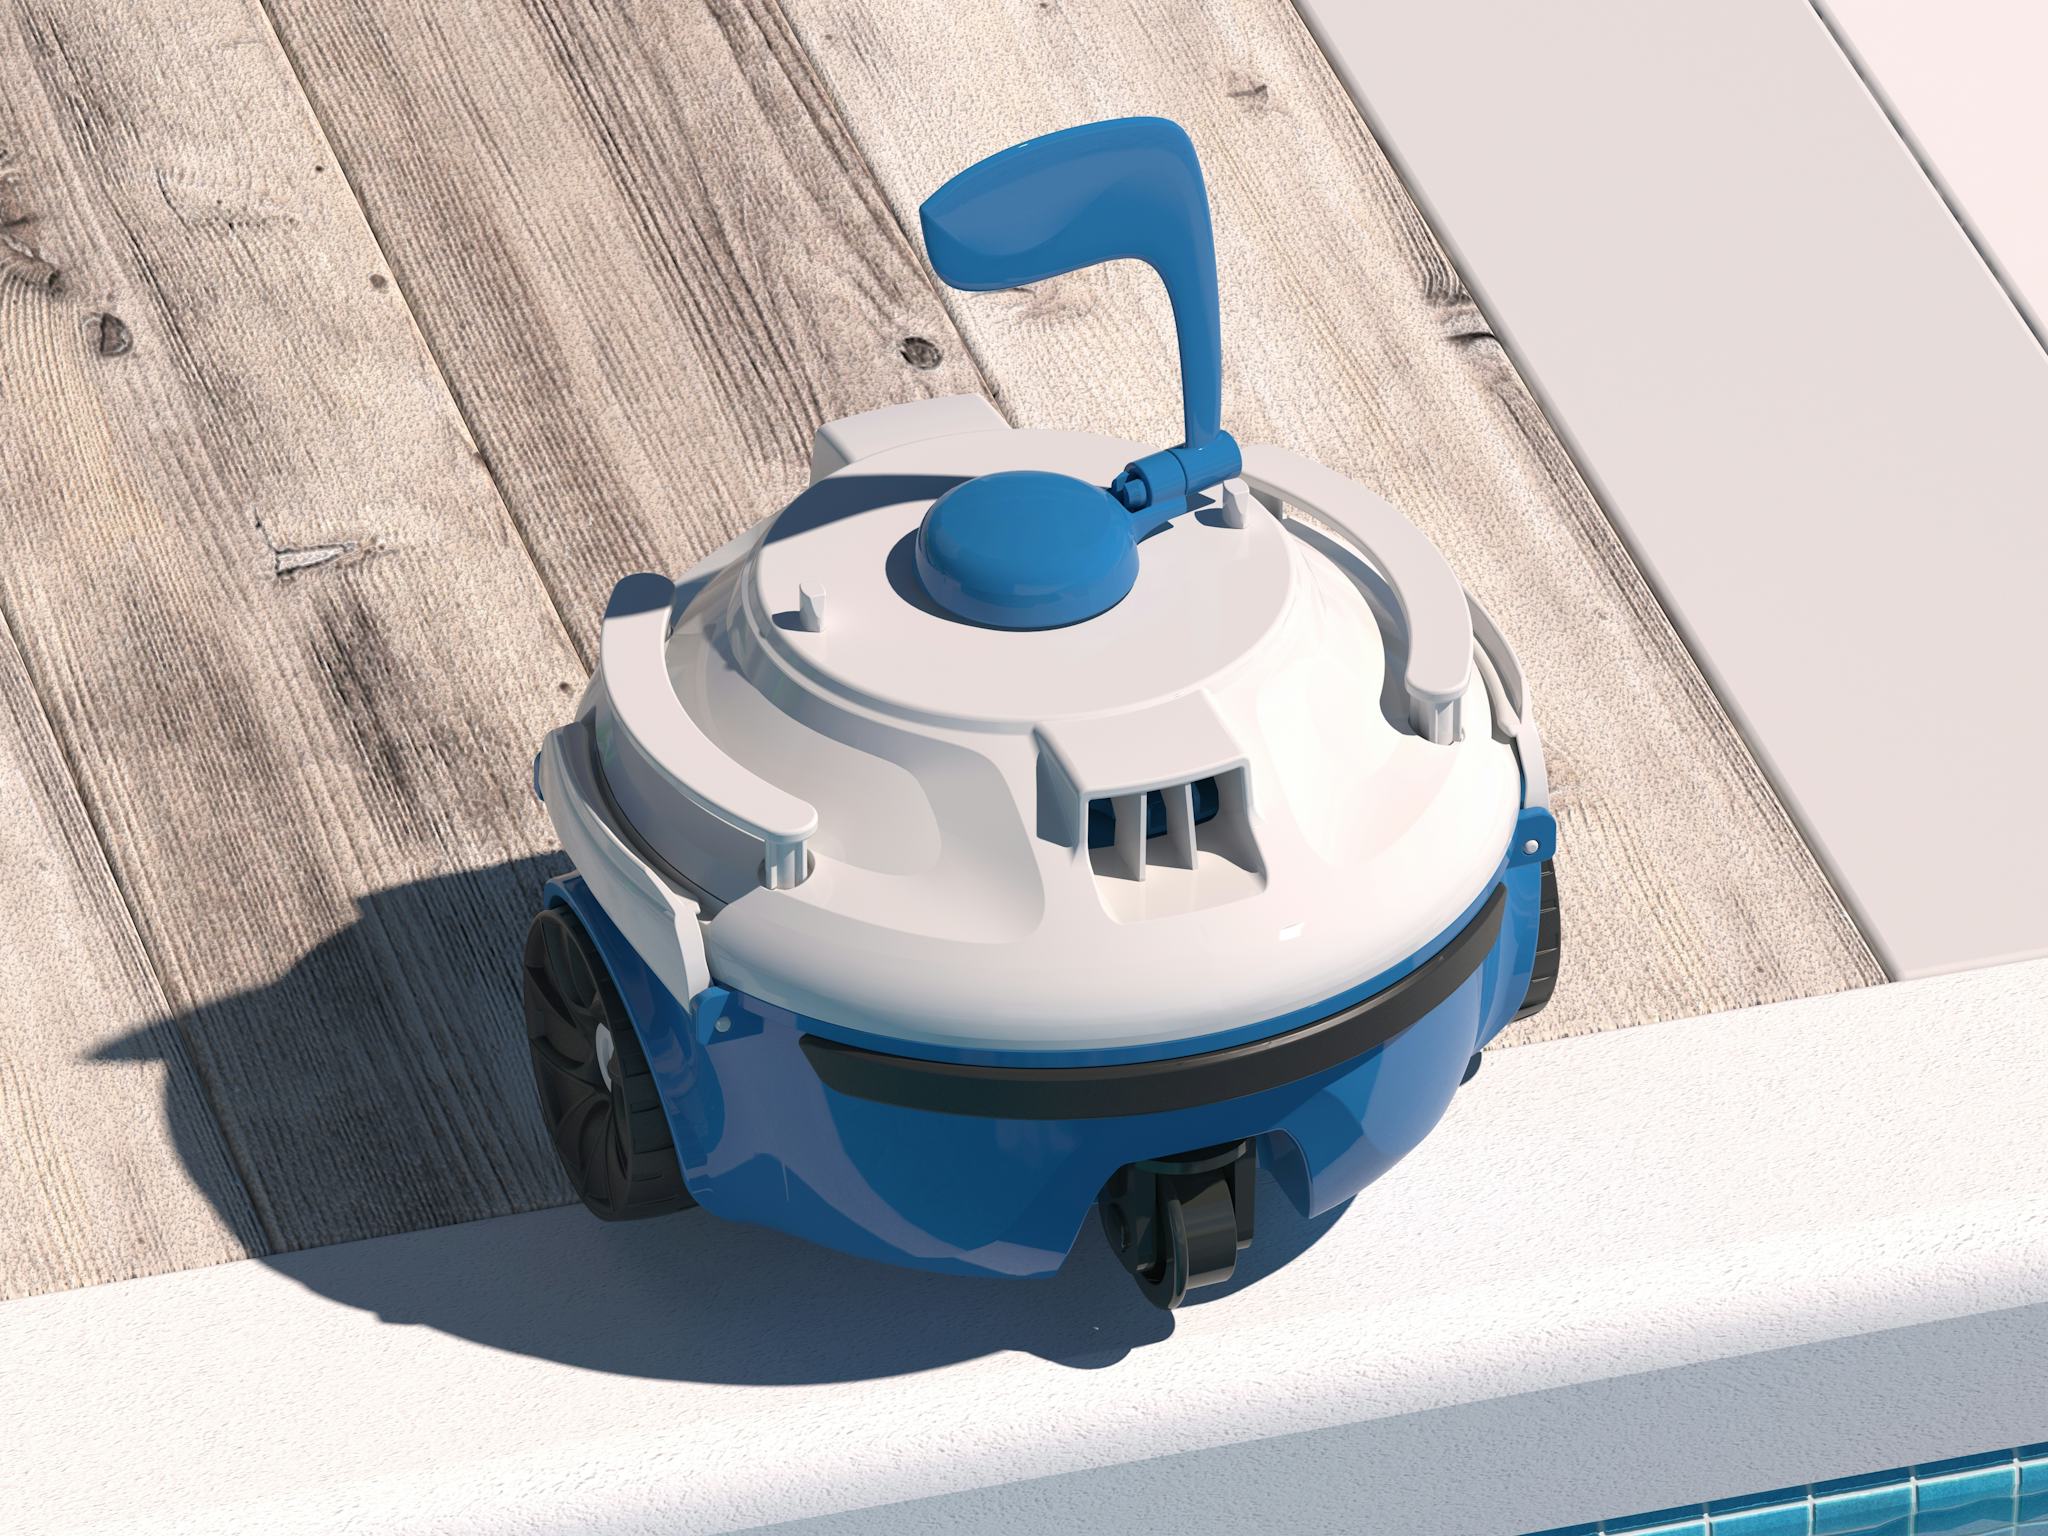 Robots piscines Robot de piscine autonome Guppy bleu Bestway 4